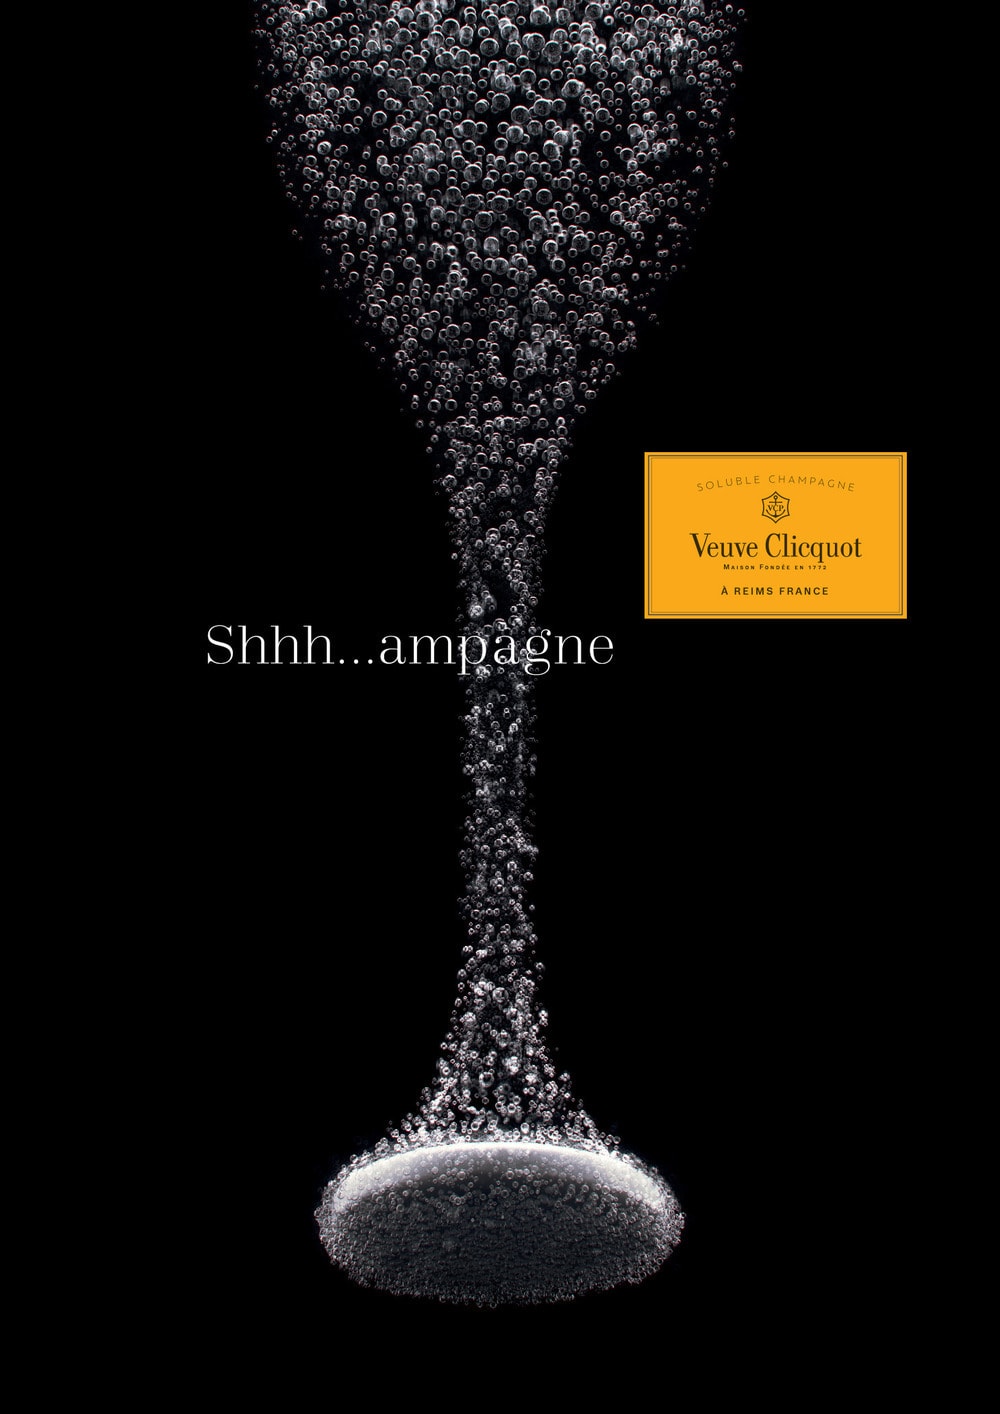 Veuve Clicquot - Concept Shhhampagne - World Brand Design Society